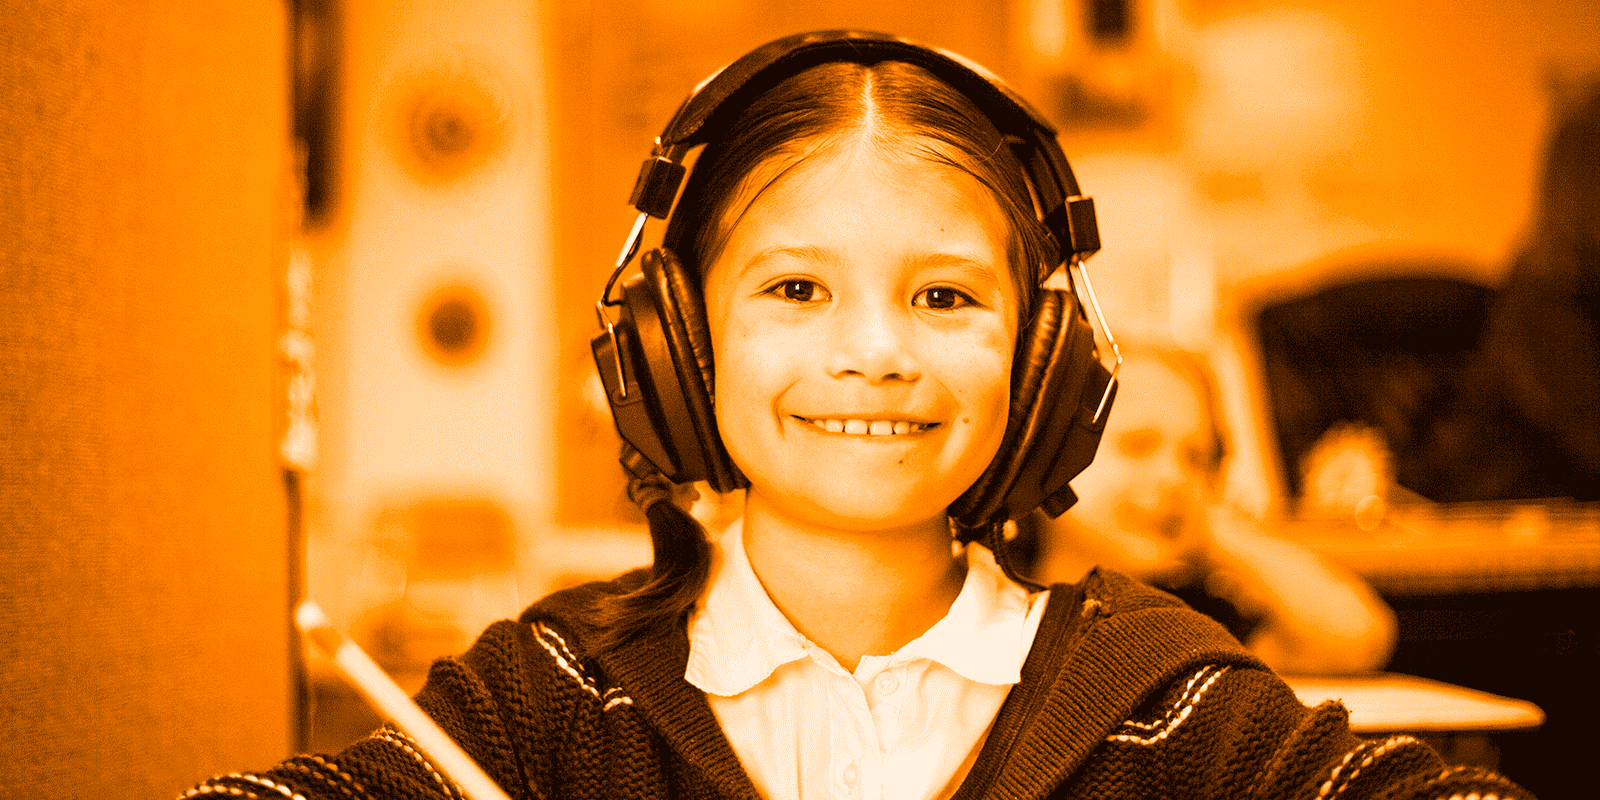  Conheça 5 podcasts de história infantil para ouvir com as crianças 